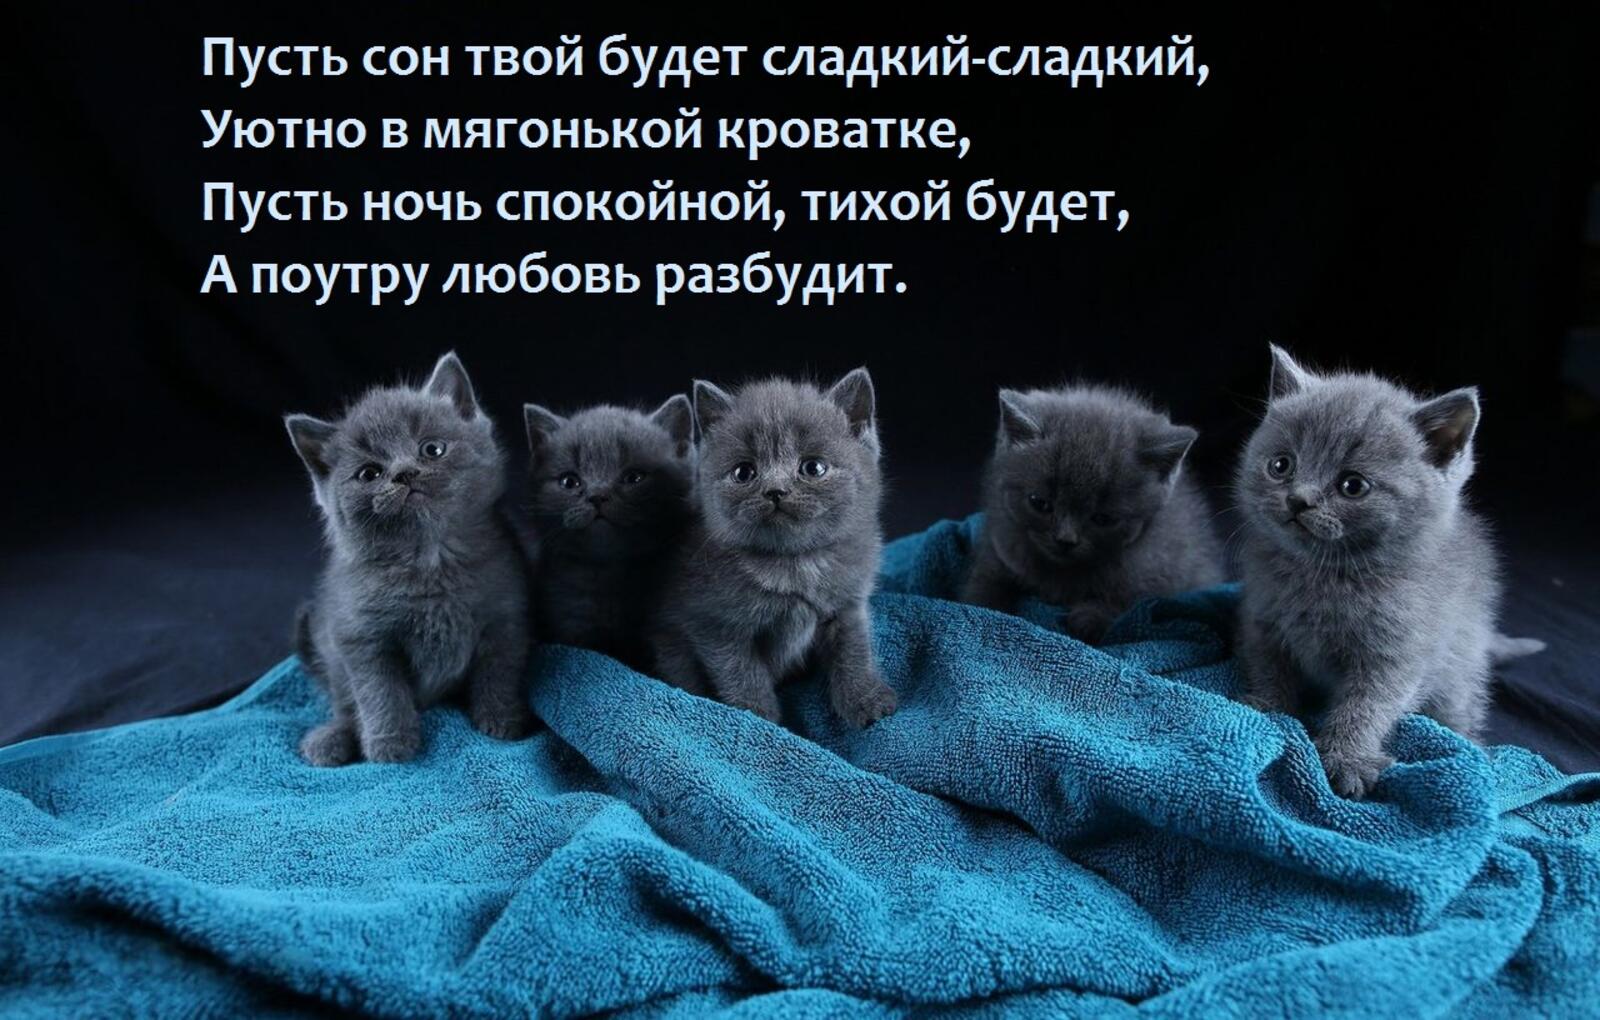 kittens blanket cats